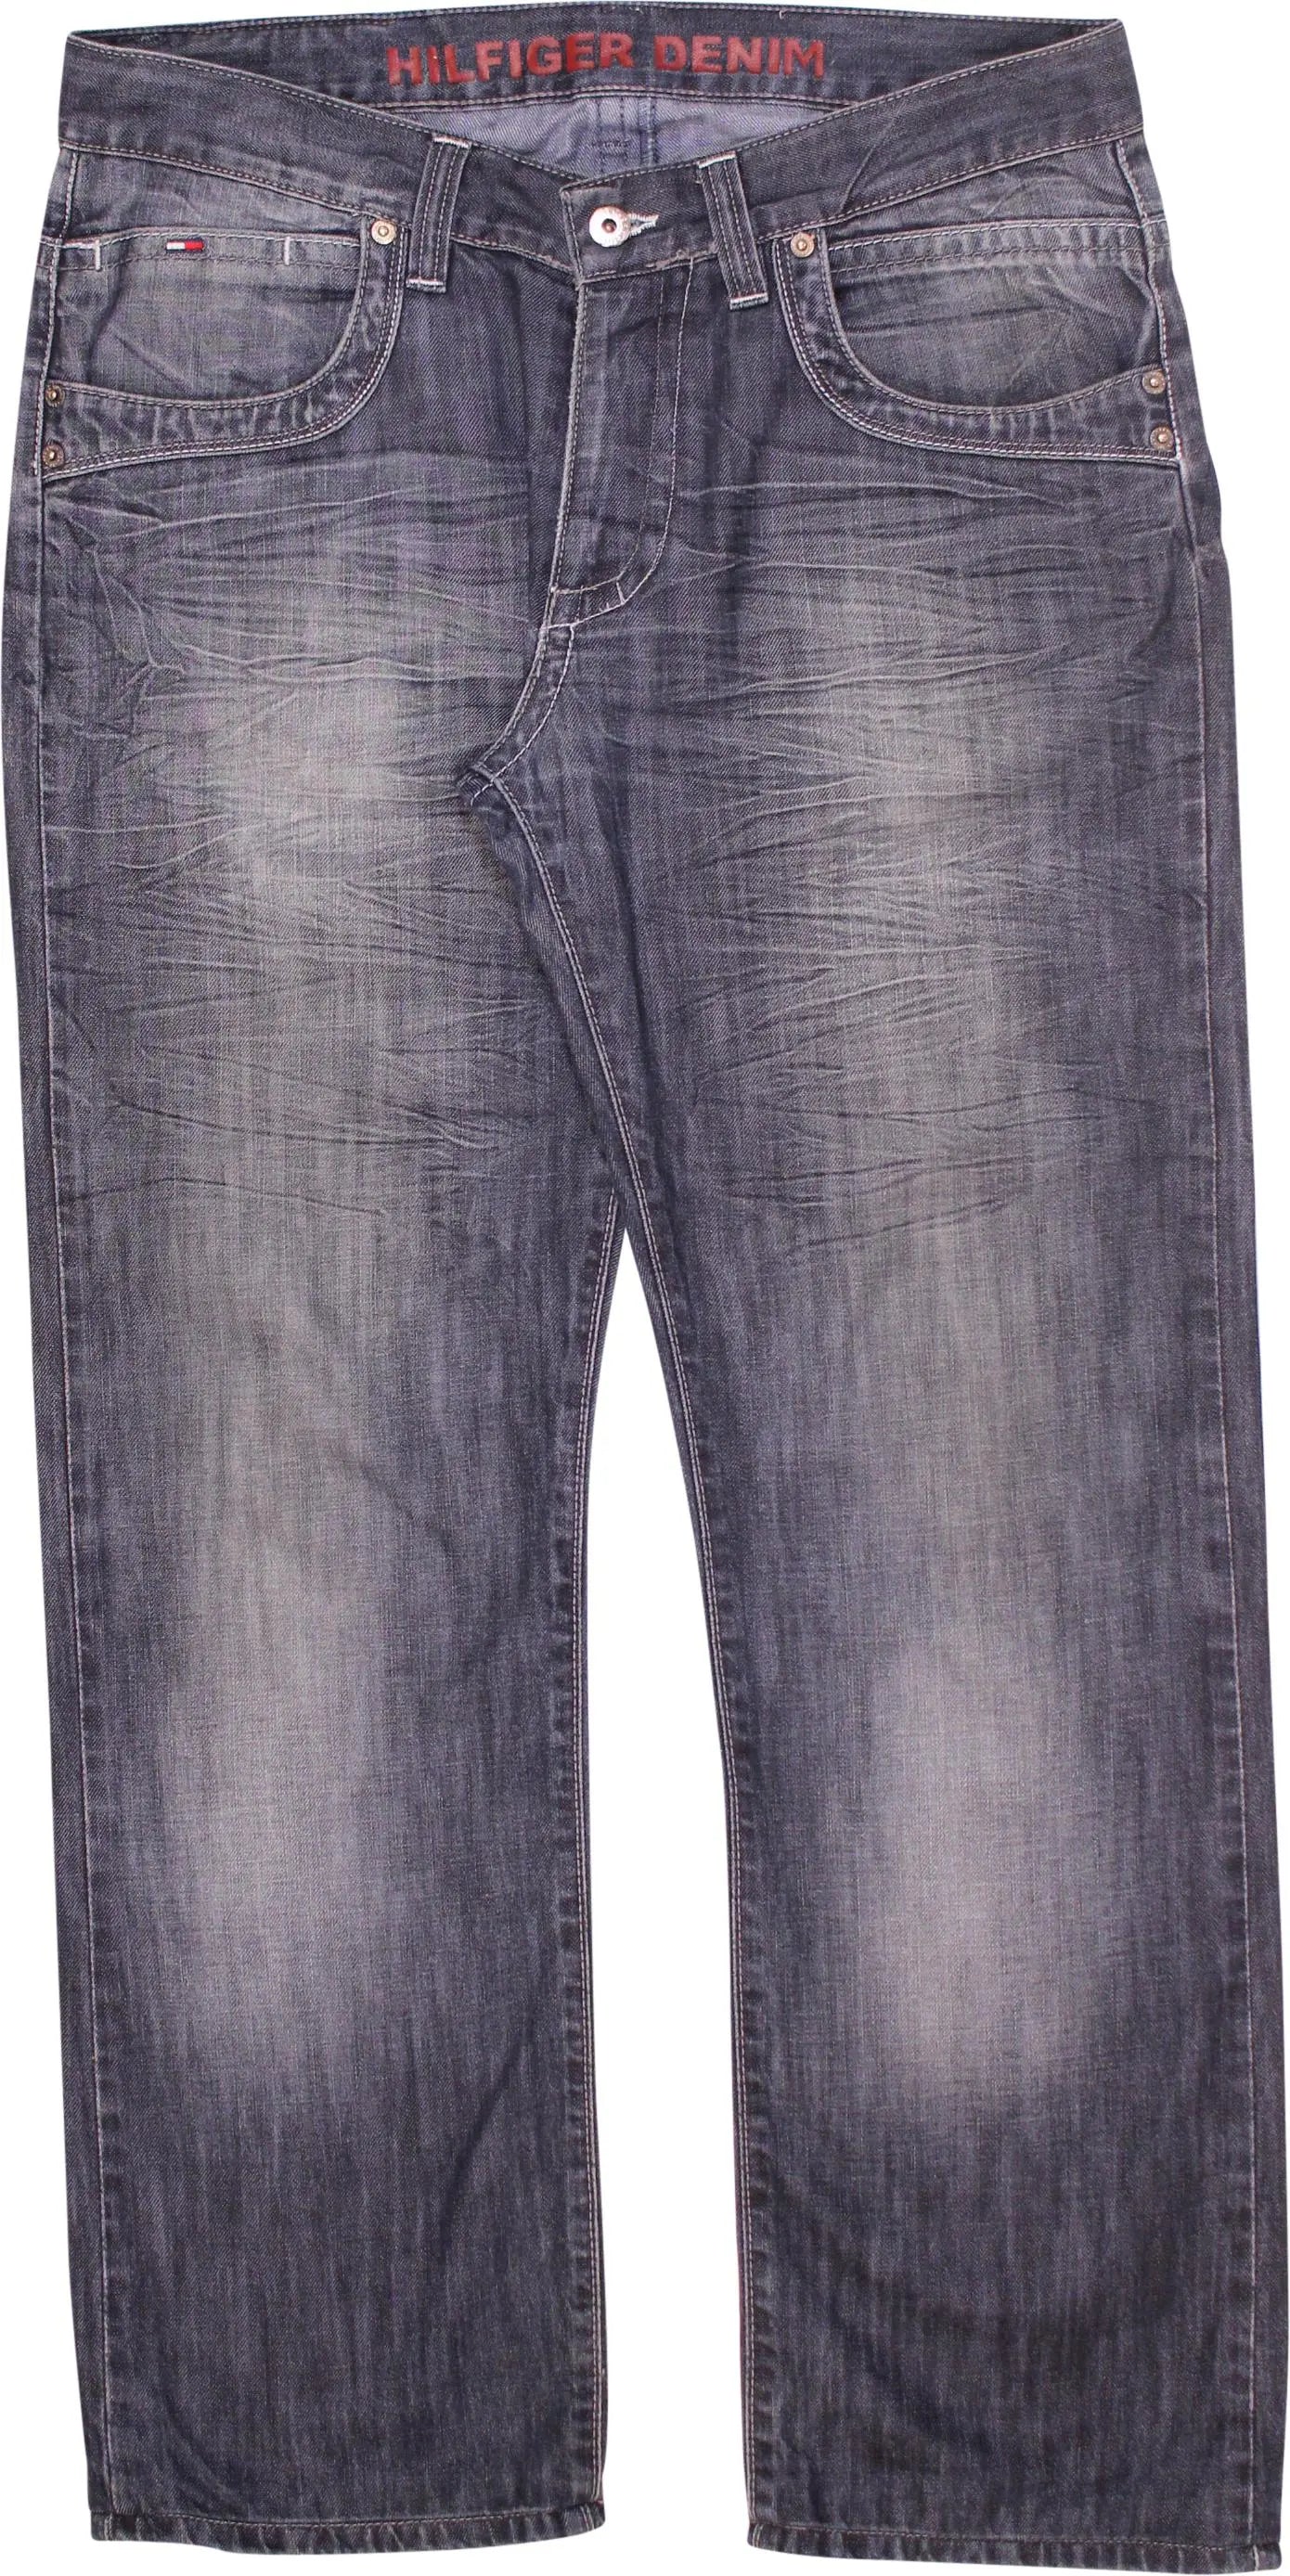 Tommy Hilfiger - Tommy Hilfiger Regular Fit Jeans- ThriftTale.com - Vintage and second handclothing